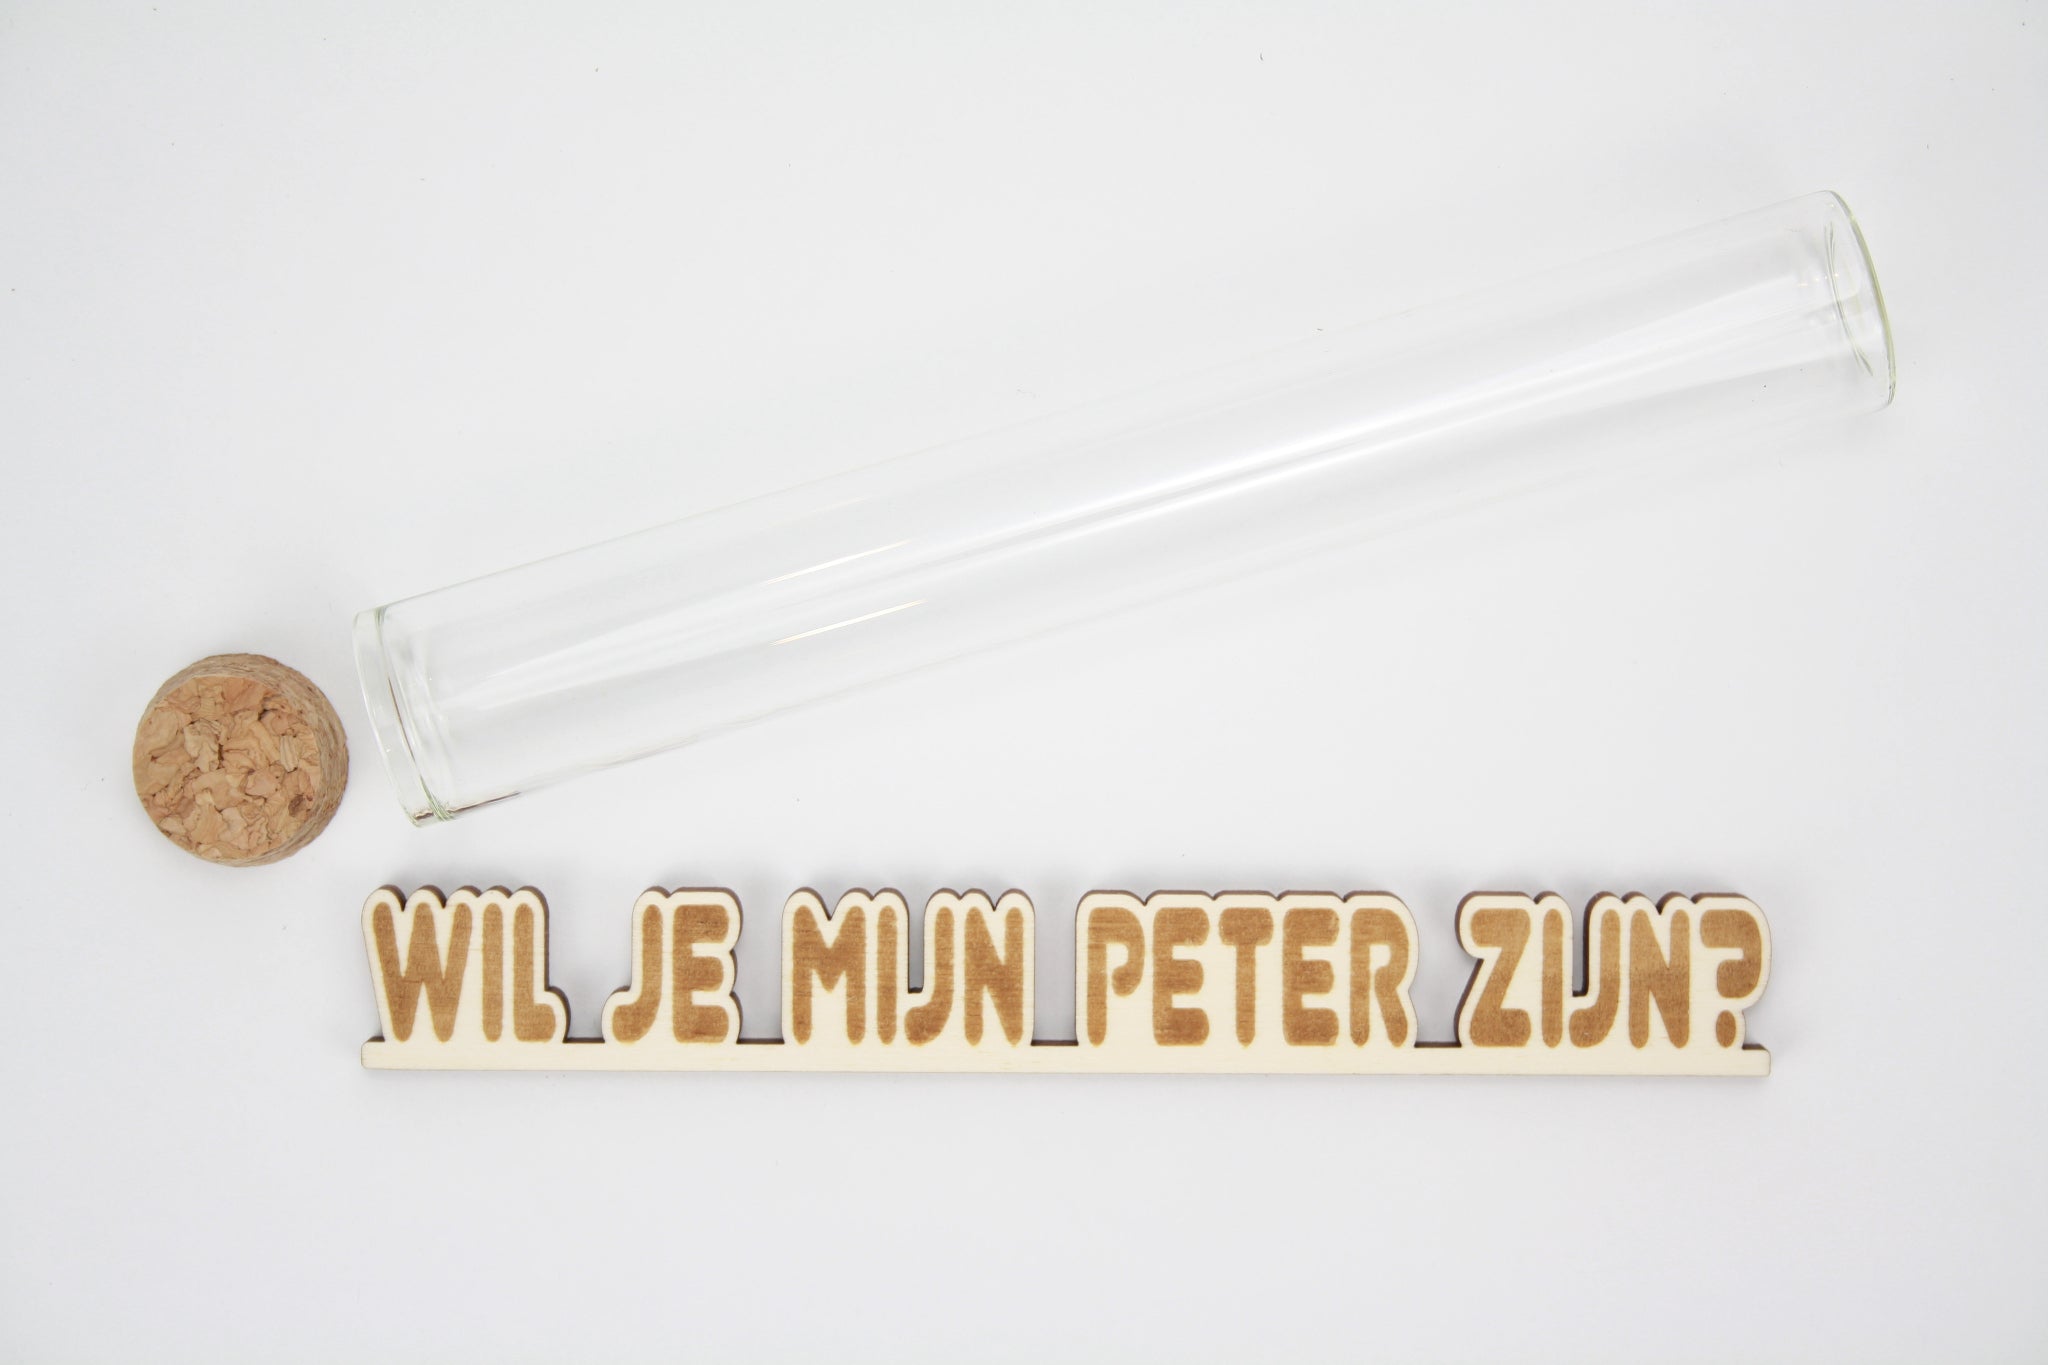 Message in a tube, aankondiging in proefbuis. lasercut gravure van 'Wil je mijn peter zijn?'.